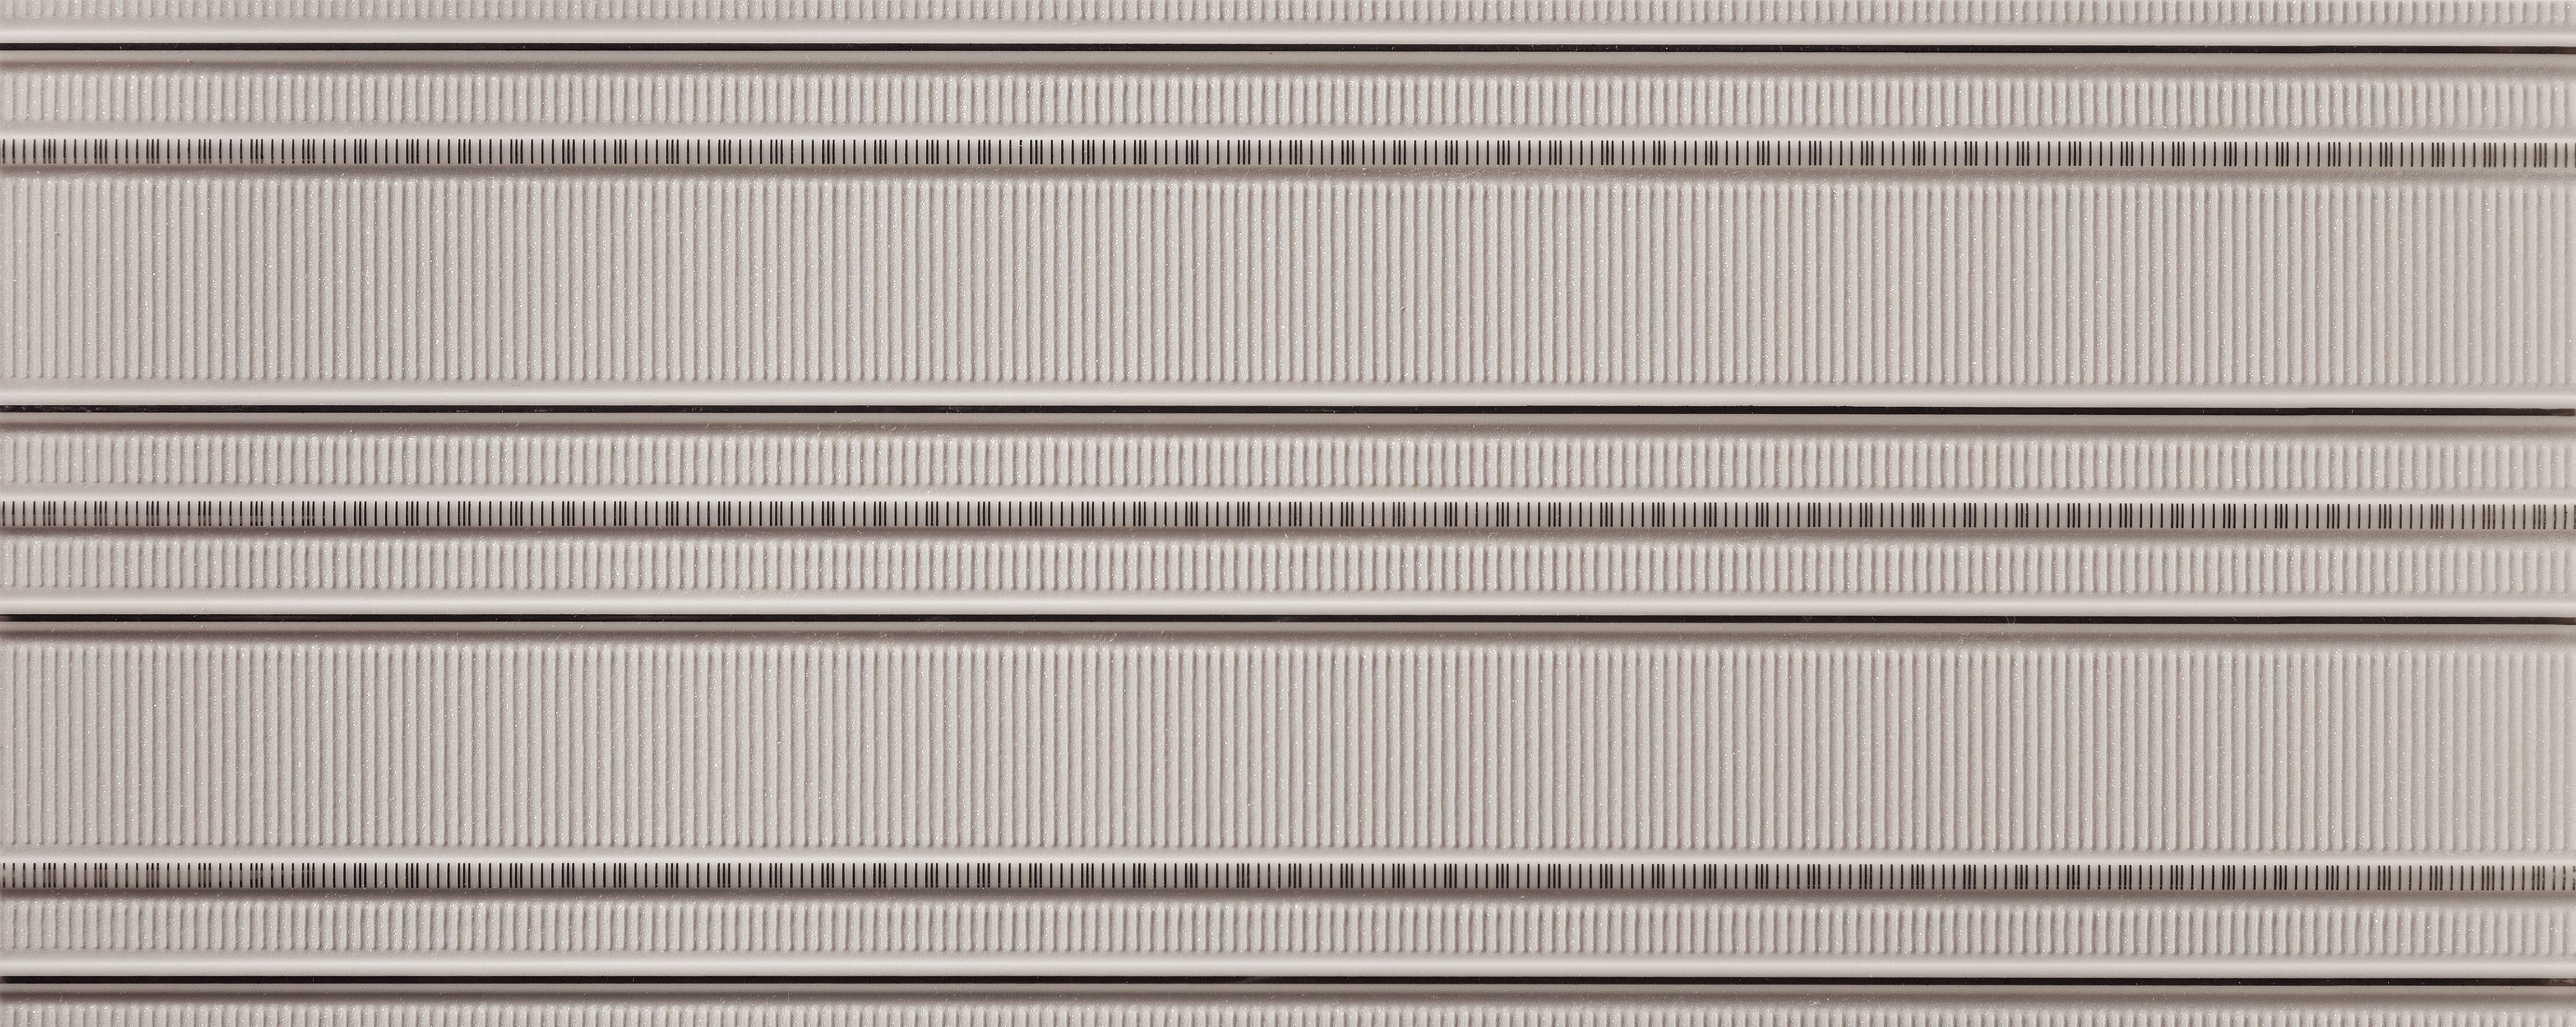 Abisso grey 1 - obkládačka inzerto 29,8x74,8 6002759